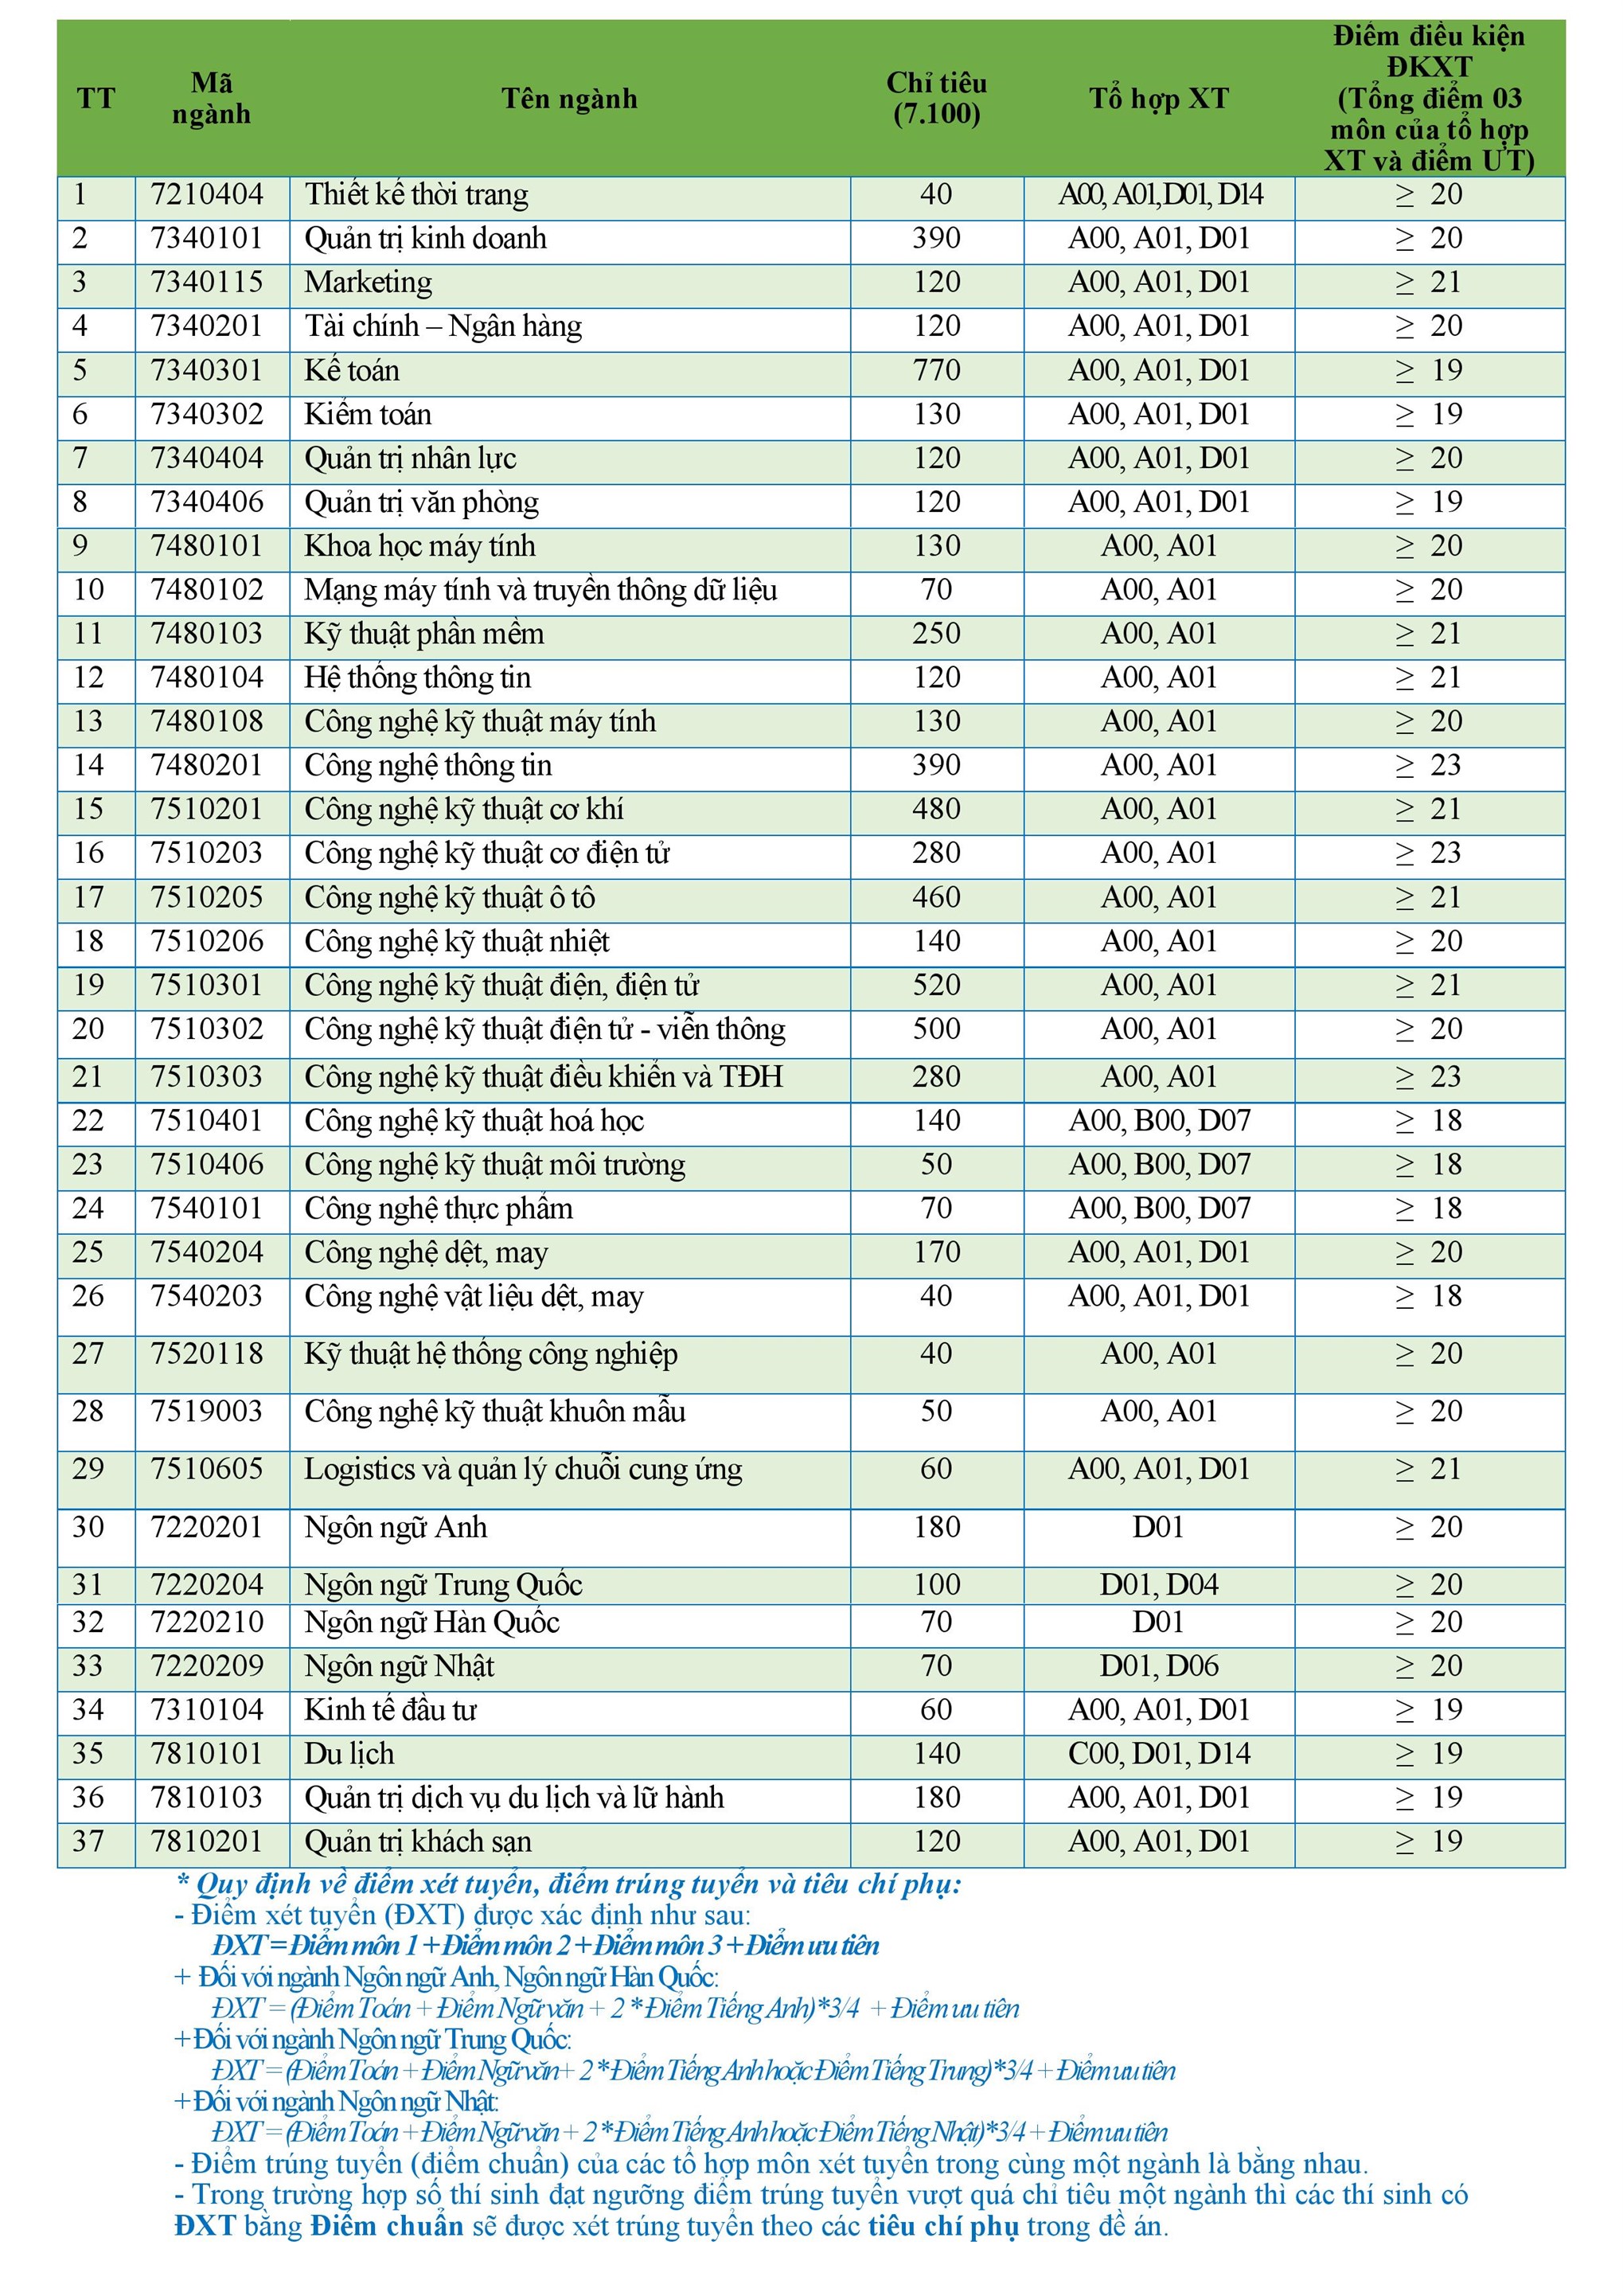 Điểm chuẩn đại học đại học công nghiệp Hà Nội năm 2020 và 5 năm trước đây